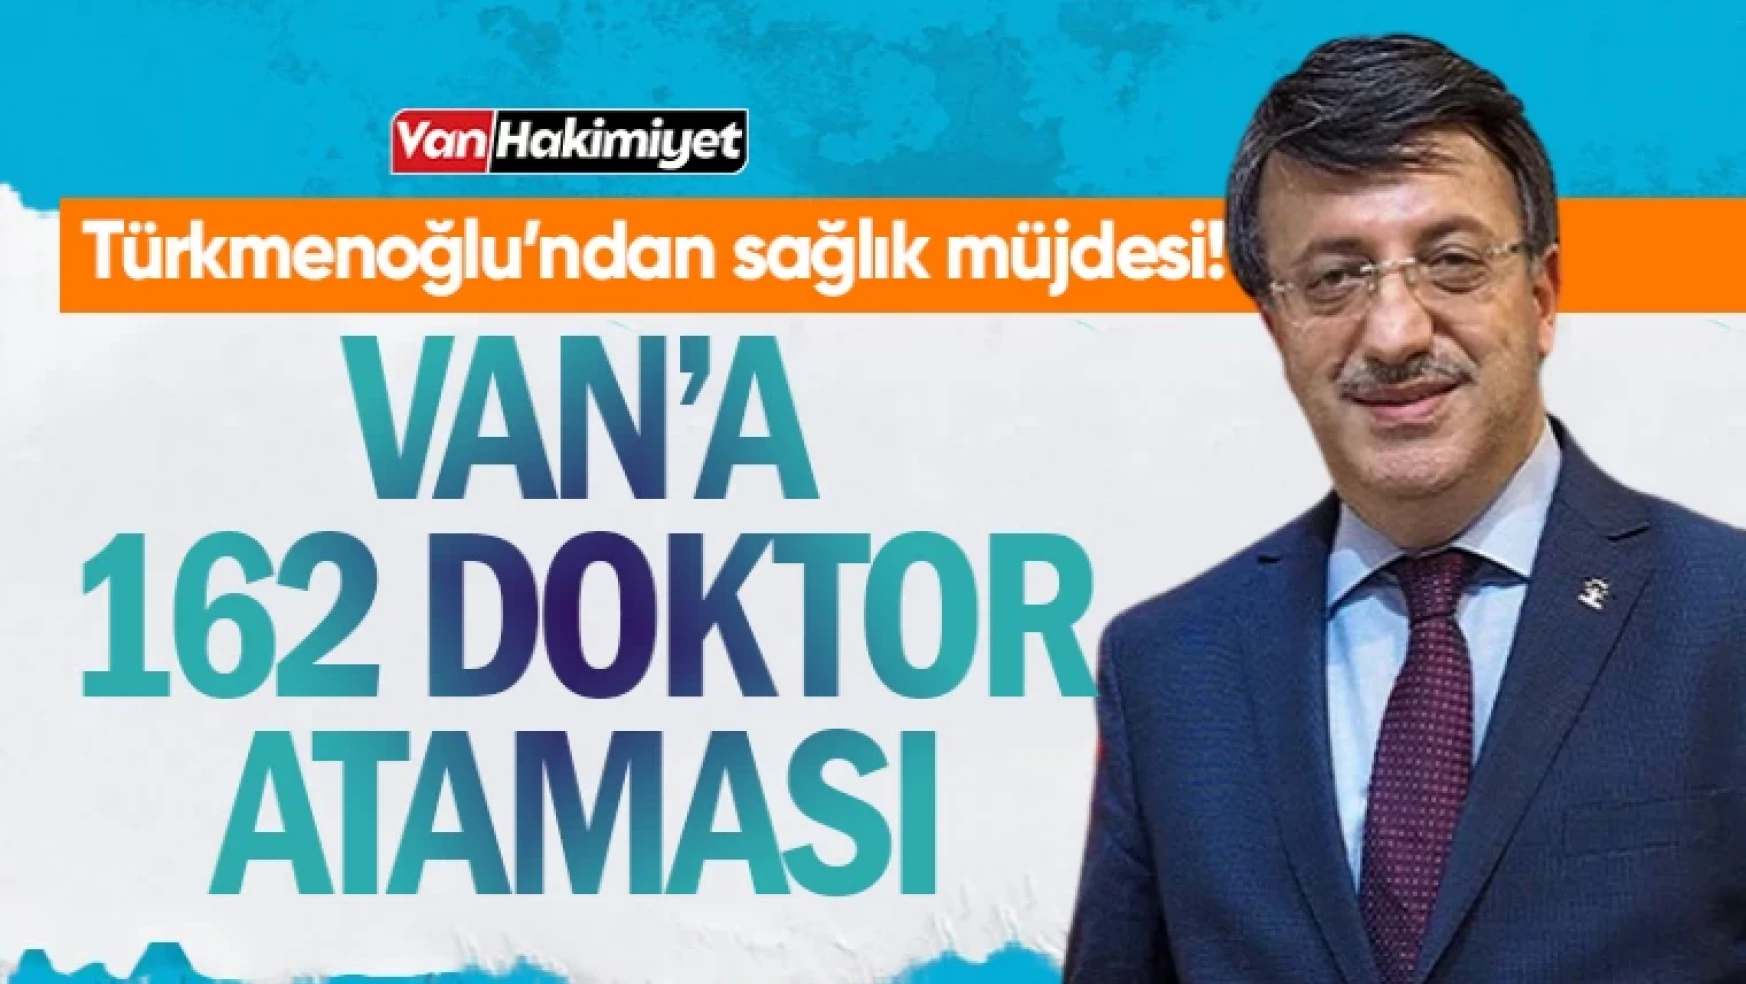 Türkmenoğlu'ndan Van'a doktor müjdesi: 162yeni doktor atandı!